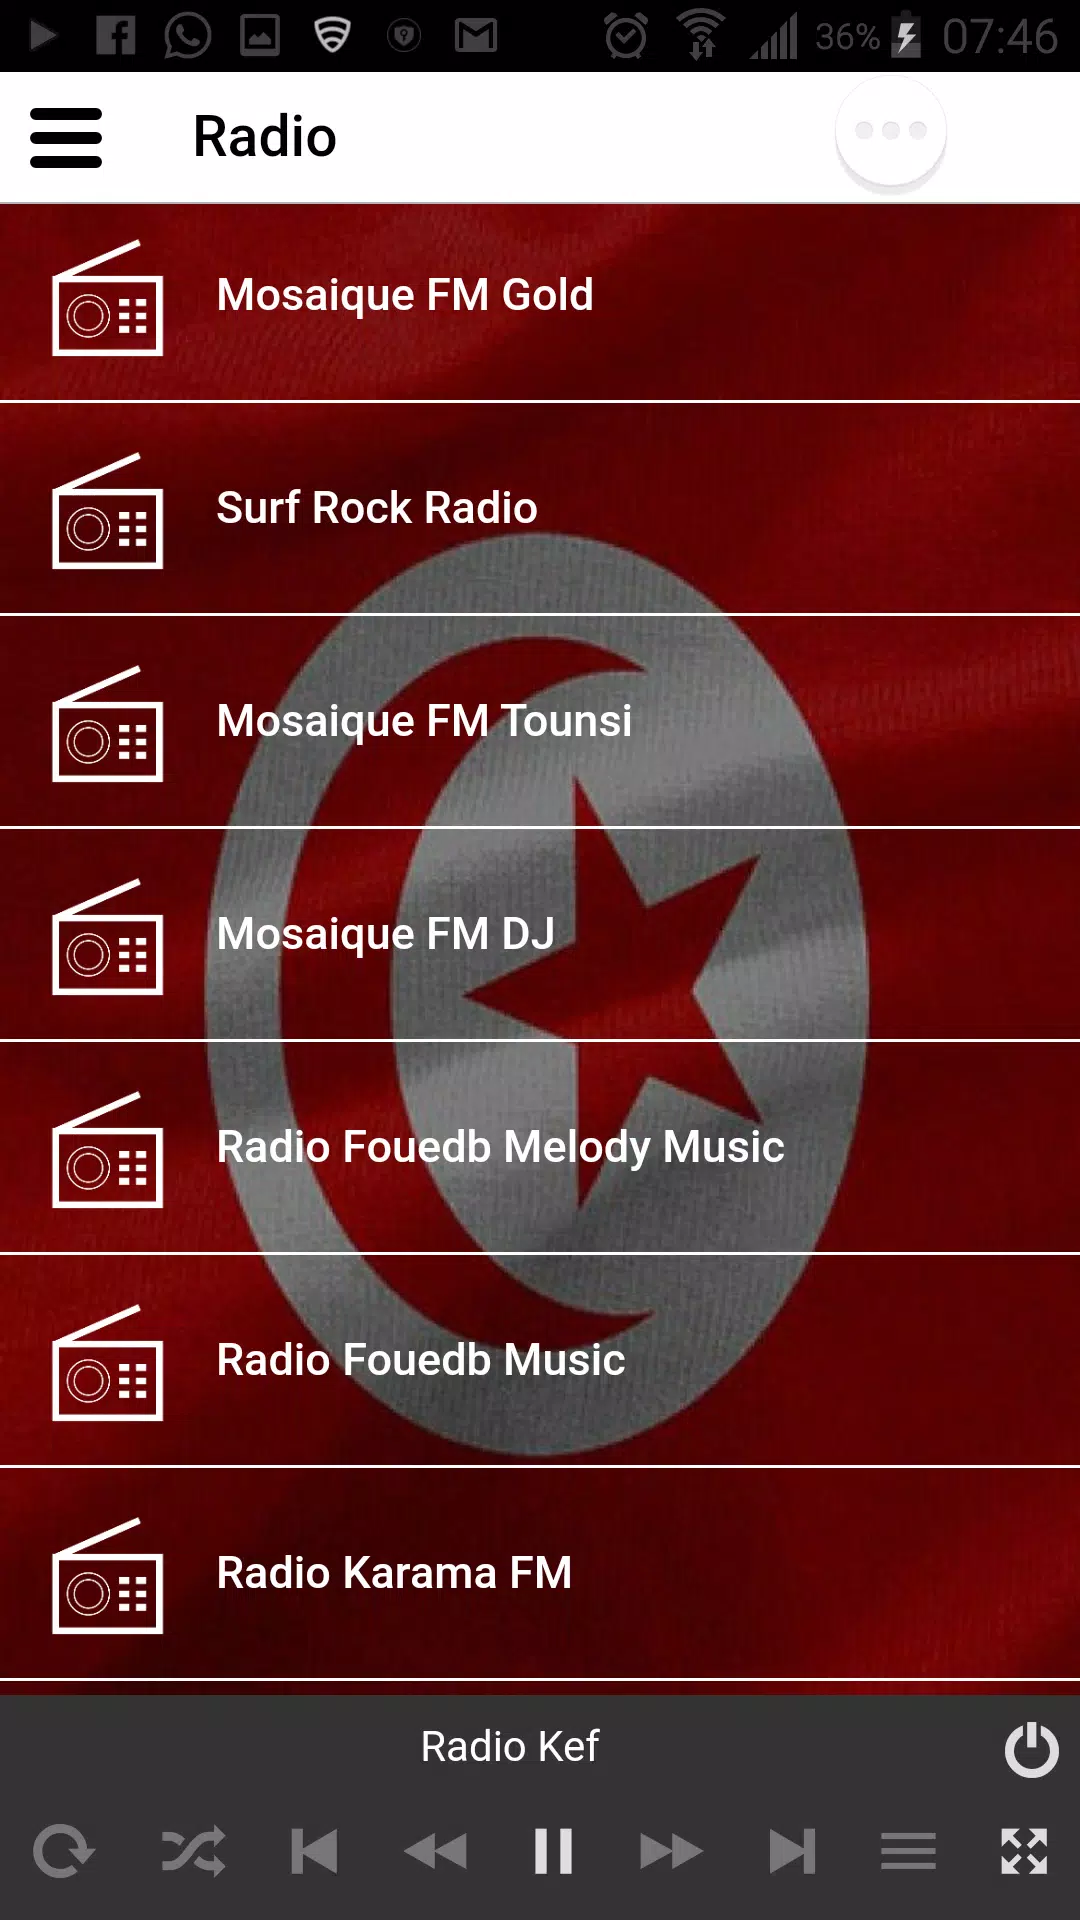 Radio Kef Live Fm Radio Tunisie Mosaique Fm APK pour Android Télécharger